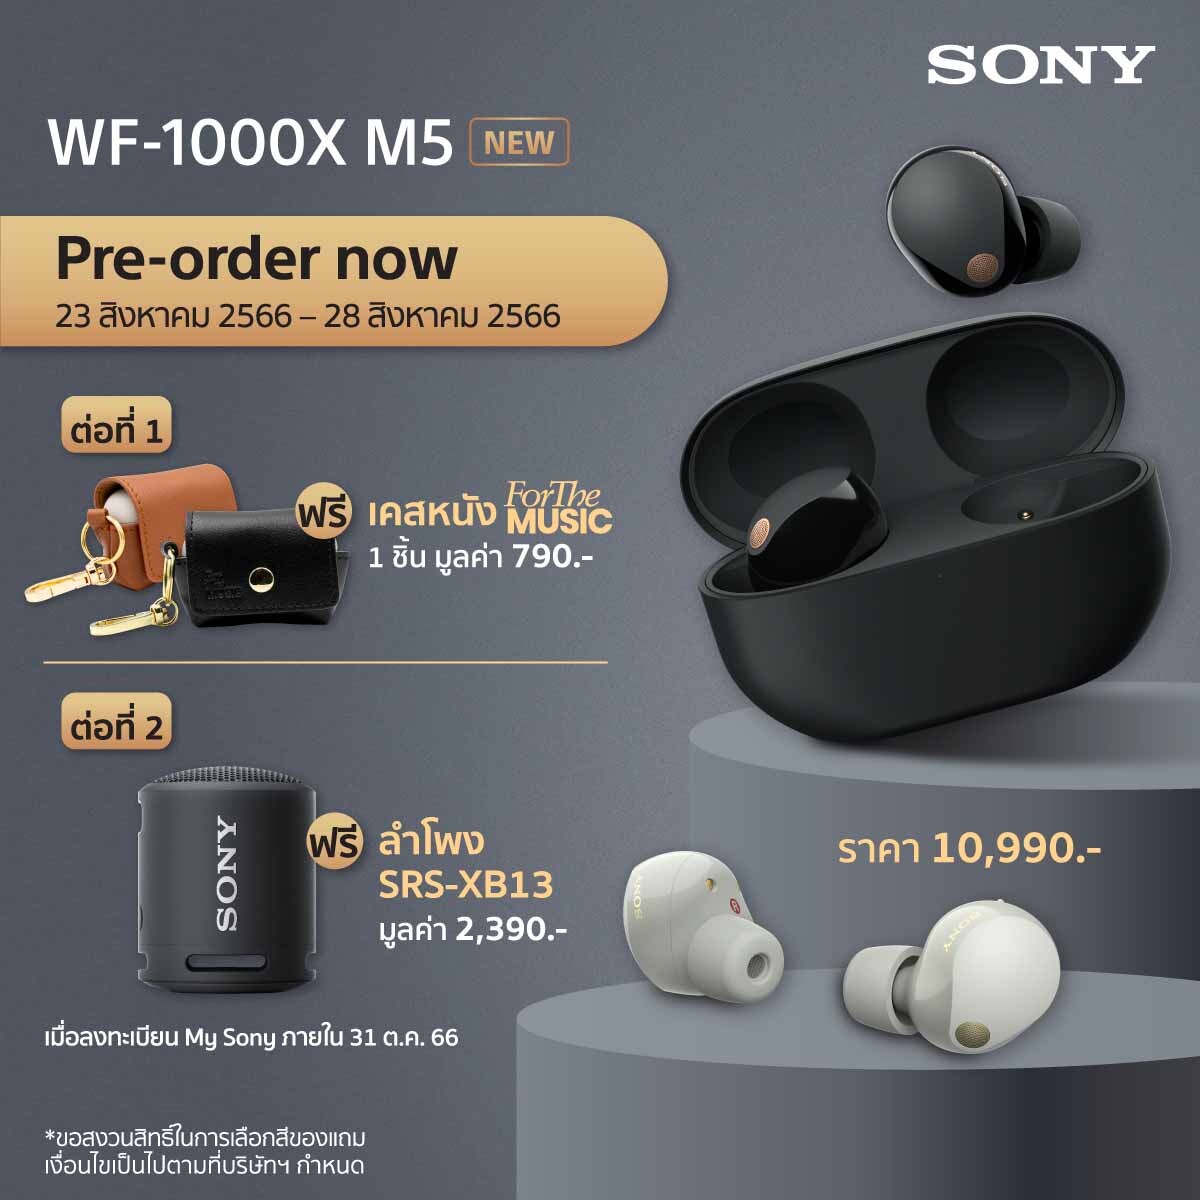 โซนี่ไทยเปิดตัวหูฟัง Truly Wireless รุ่นใหม่ล่าสุด ในตระกูล "1000X Series"กับ WF-1000XM5